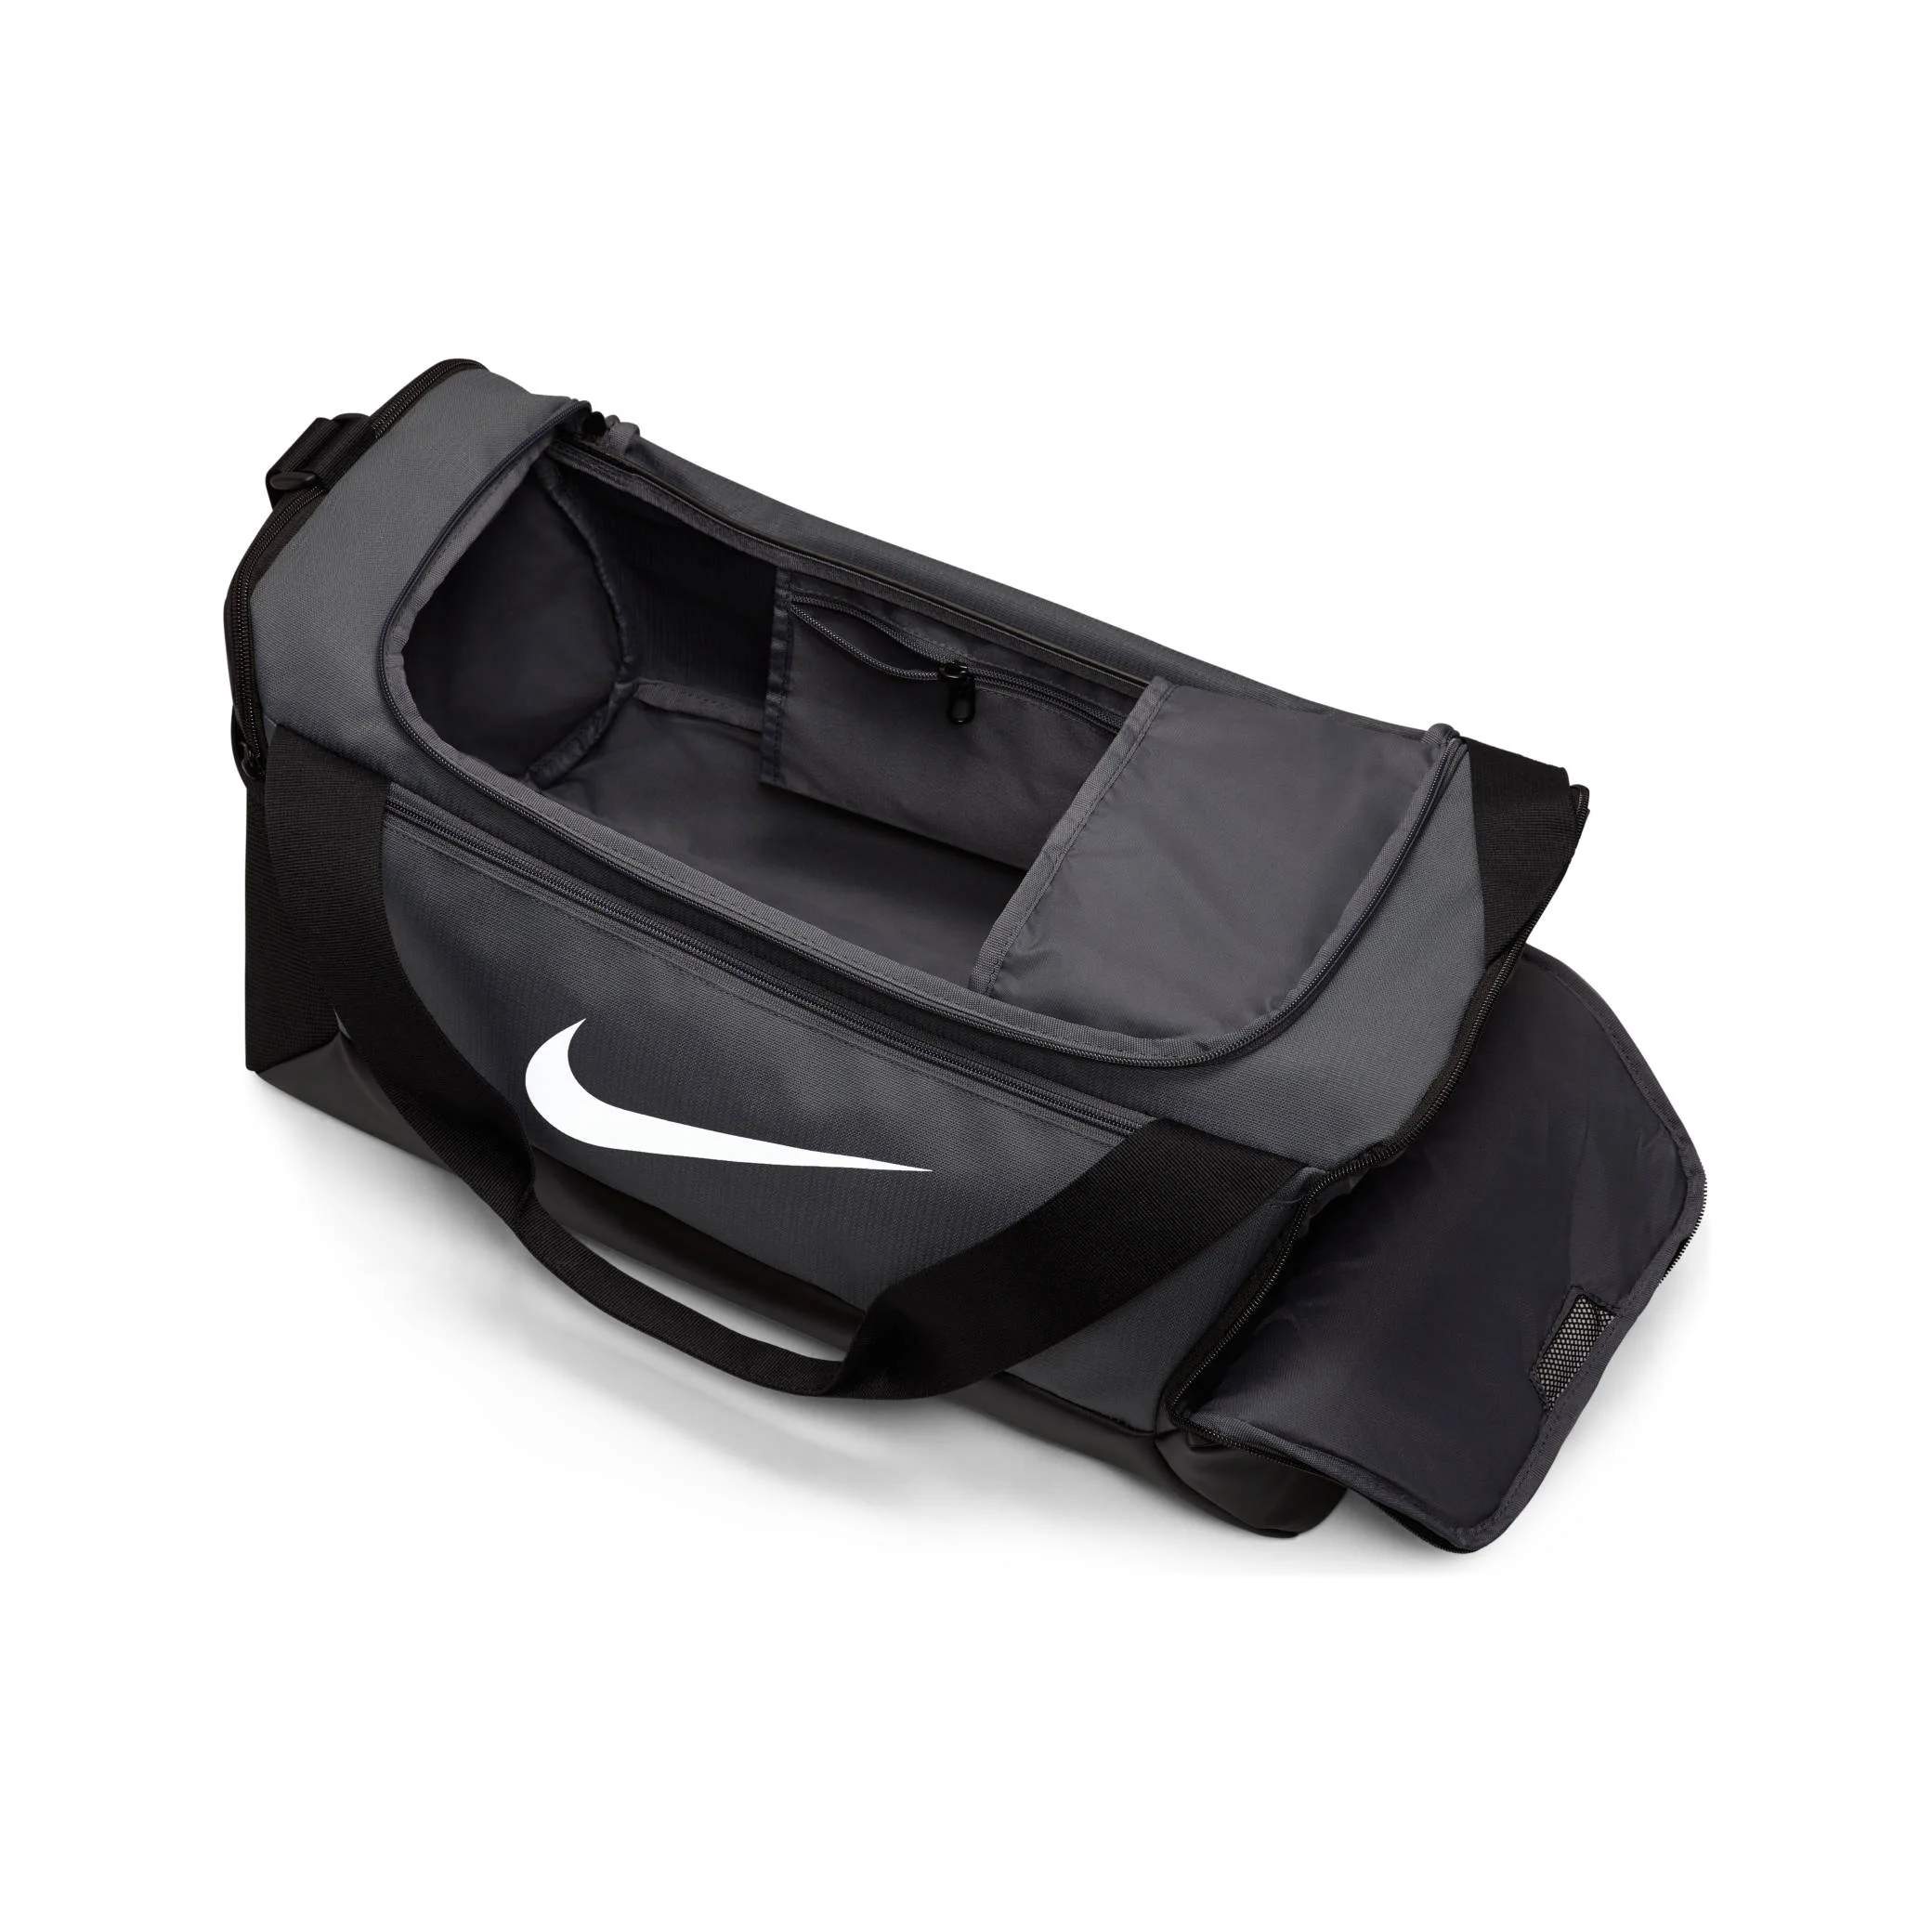 Nike Brasilia Xs Duffel 9.5 (25 l) black DM3977-010 - AliExpress